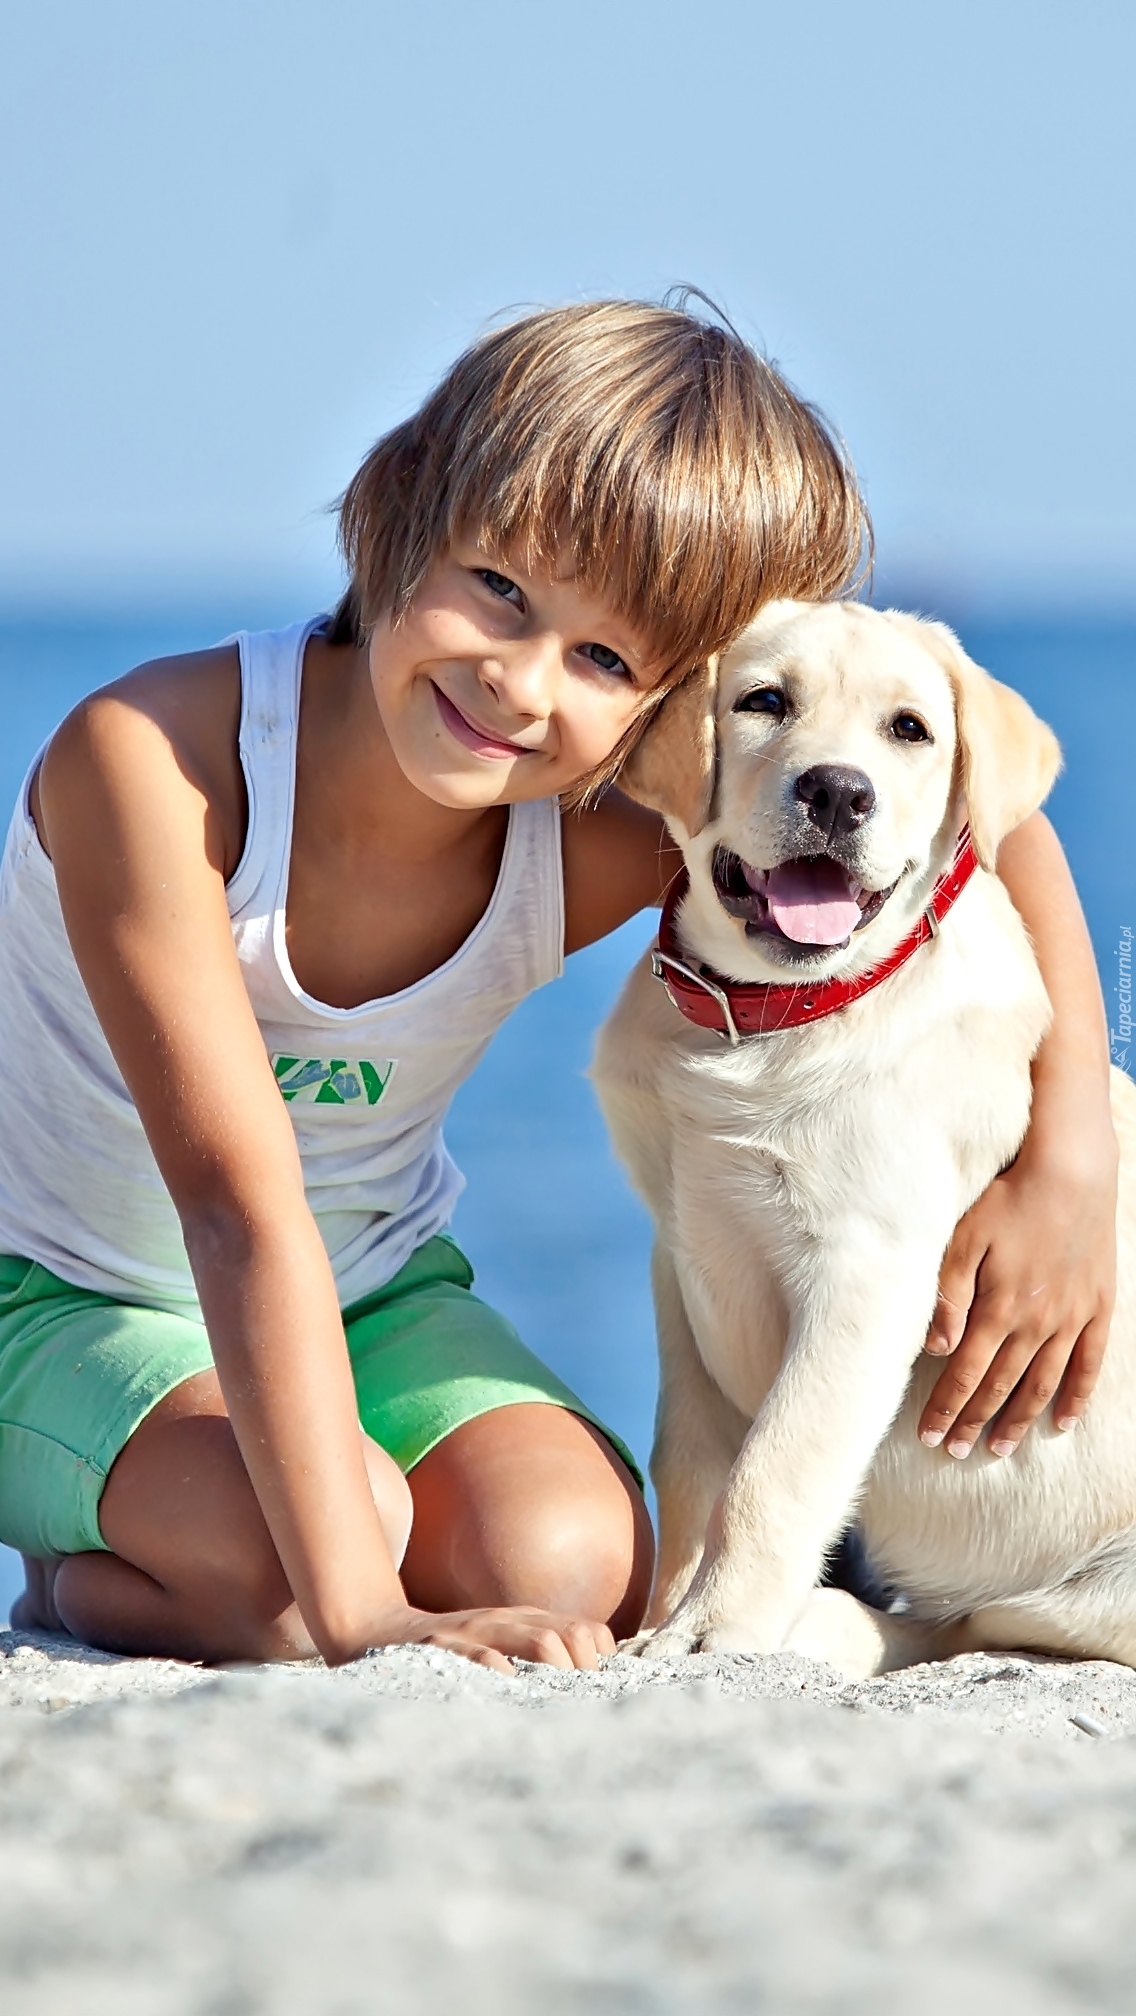 Chłopiec z psem na plaży